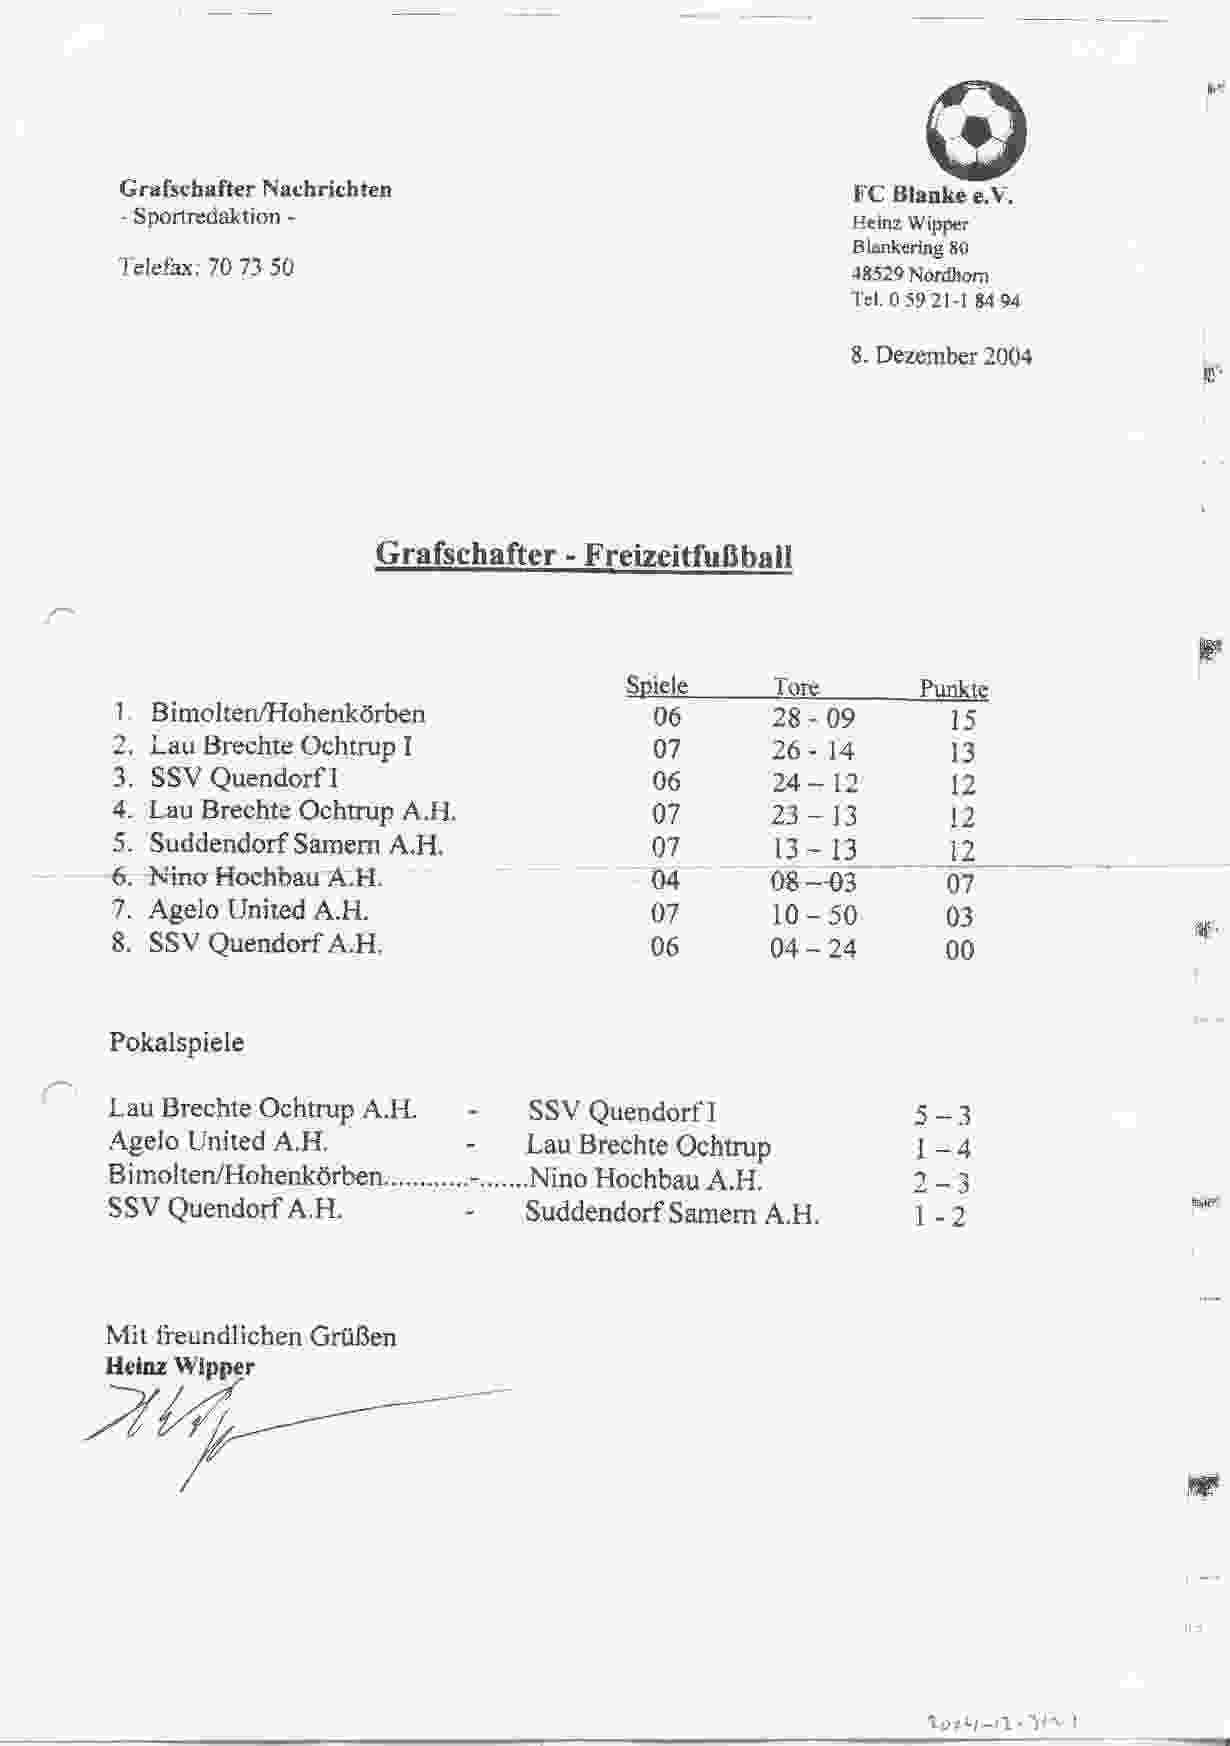 Tussenstand Grafschafter Freizeit Fuβball Meisterrunde seizoen 2003/2004